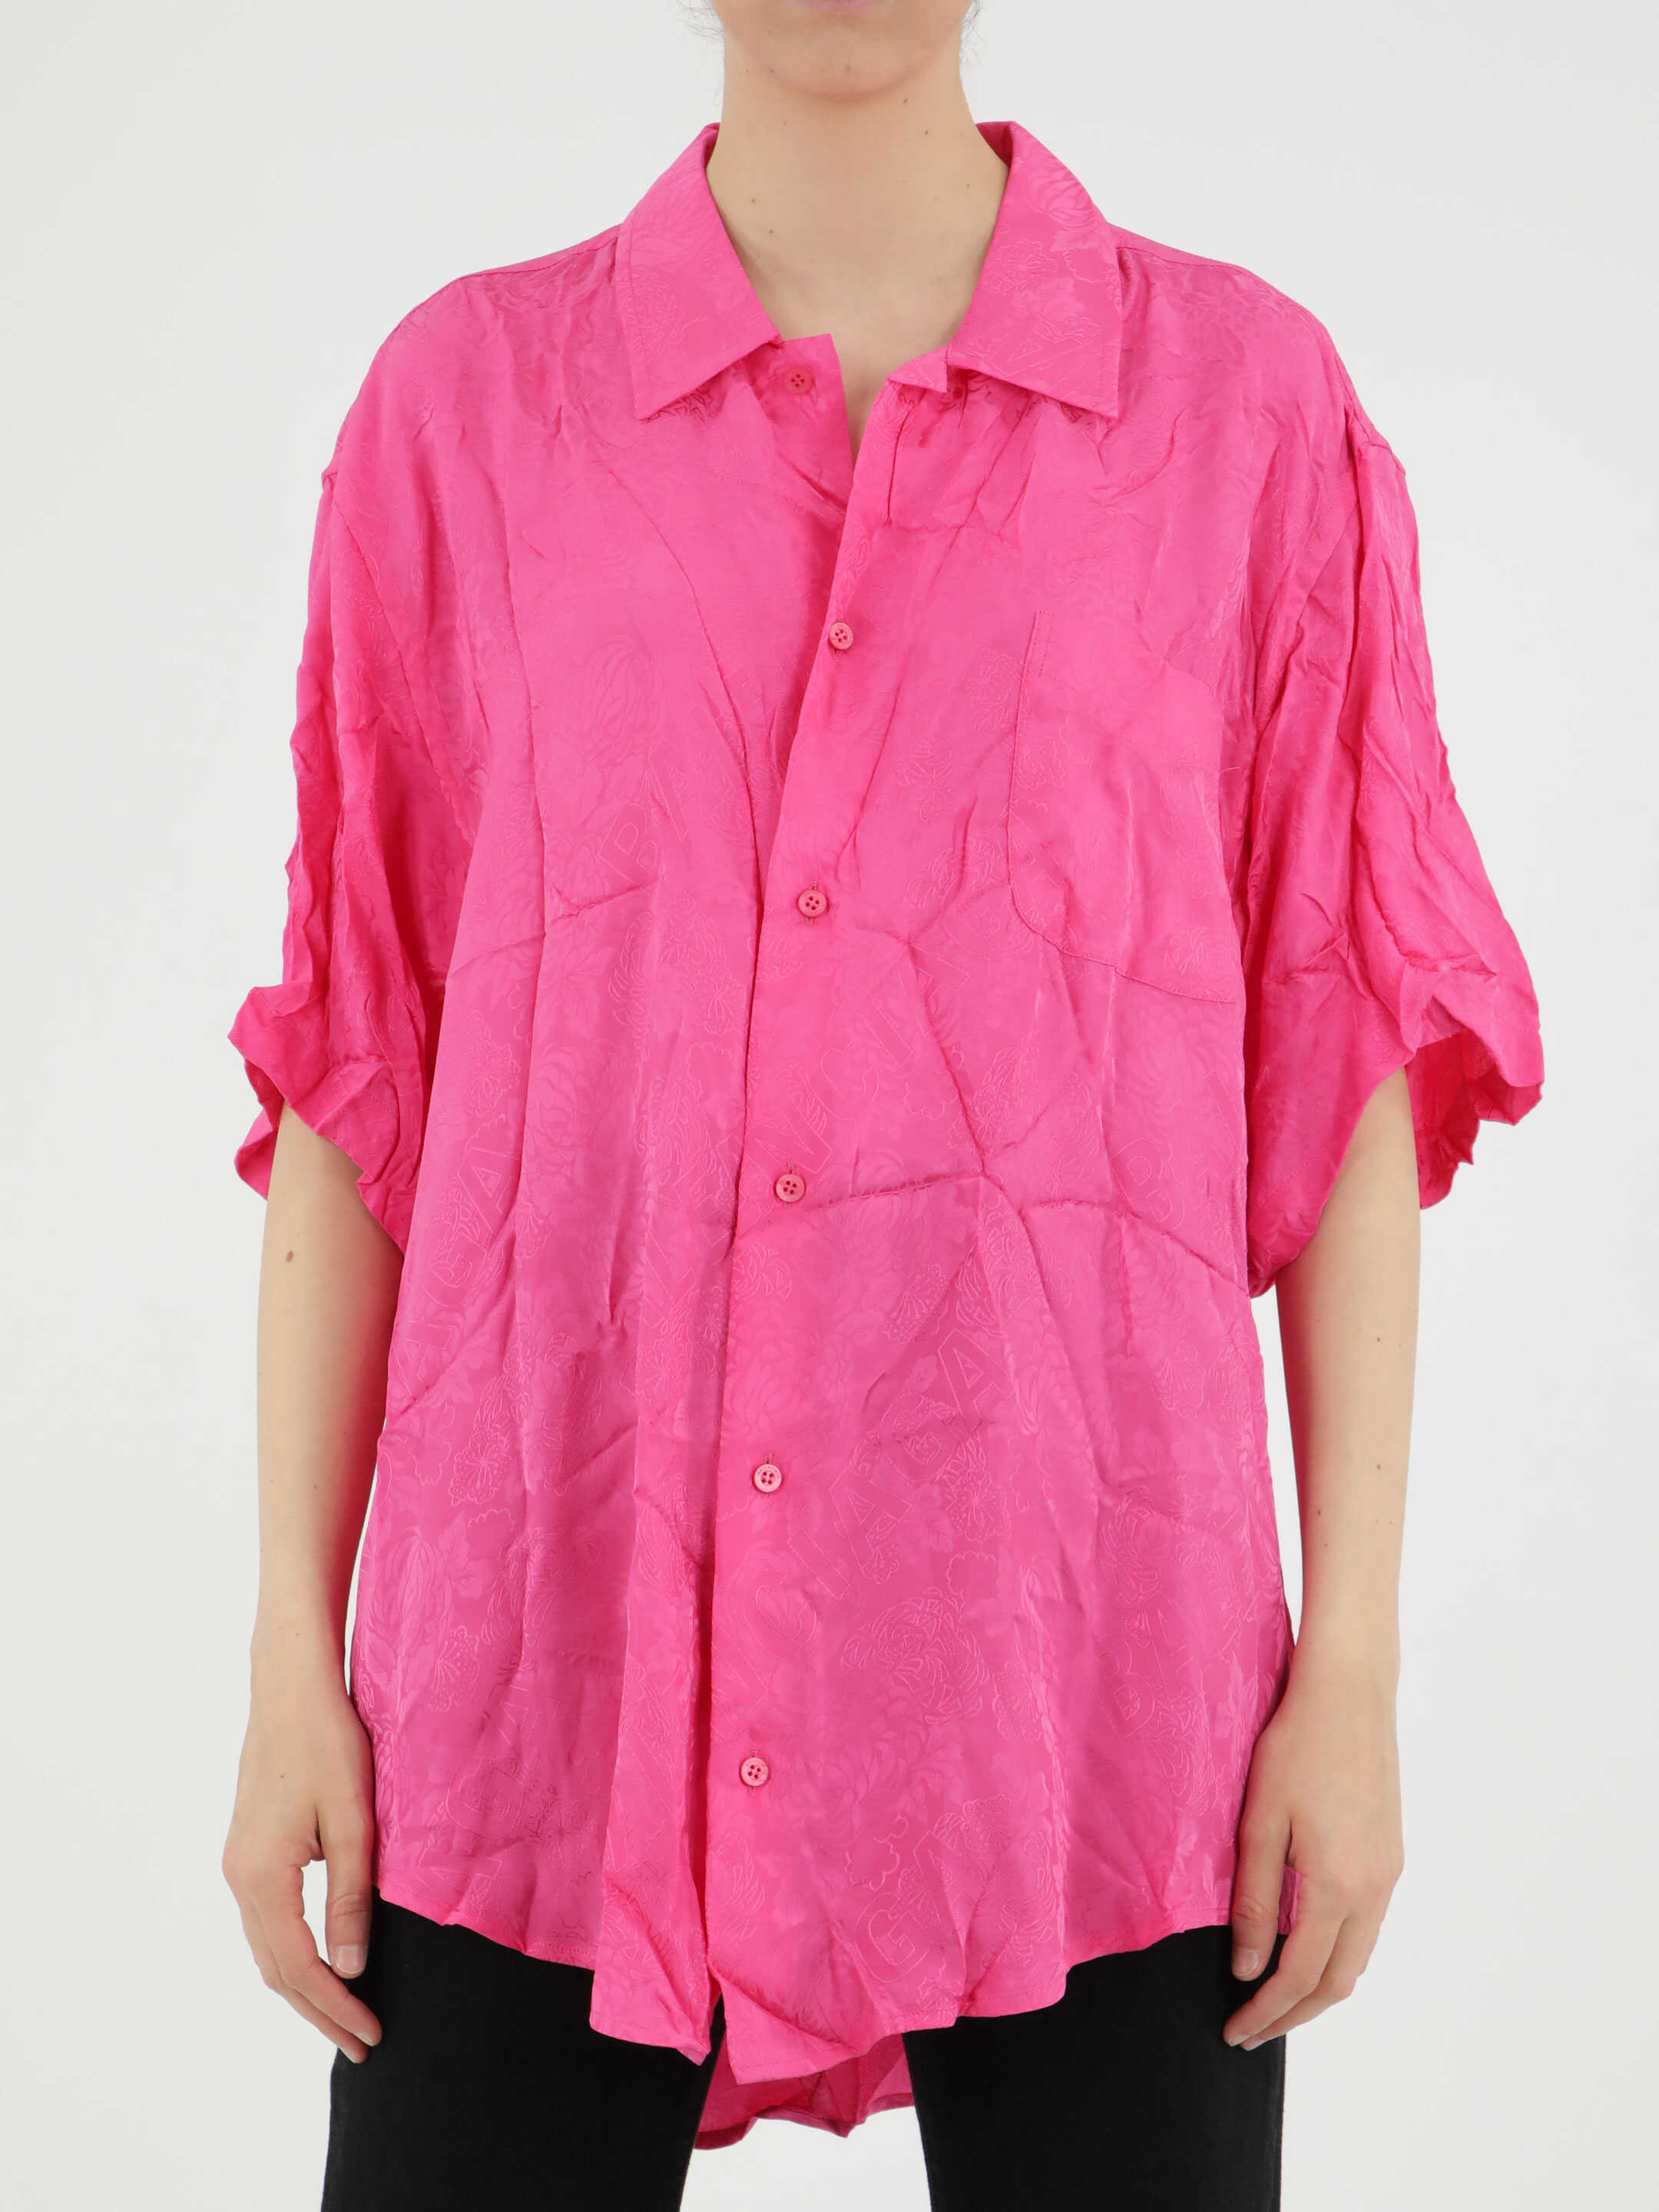 Balenciaga Jacquard Shirt Pink image0